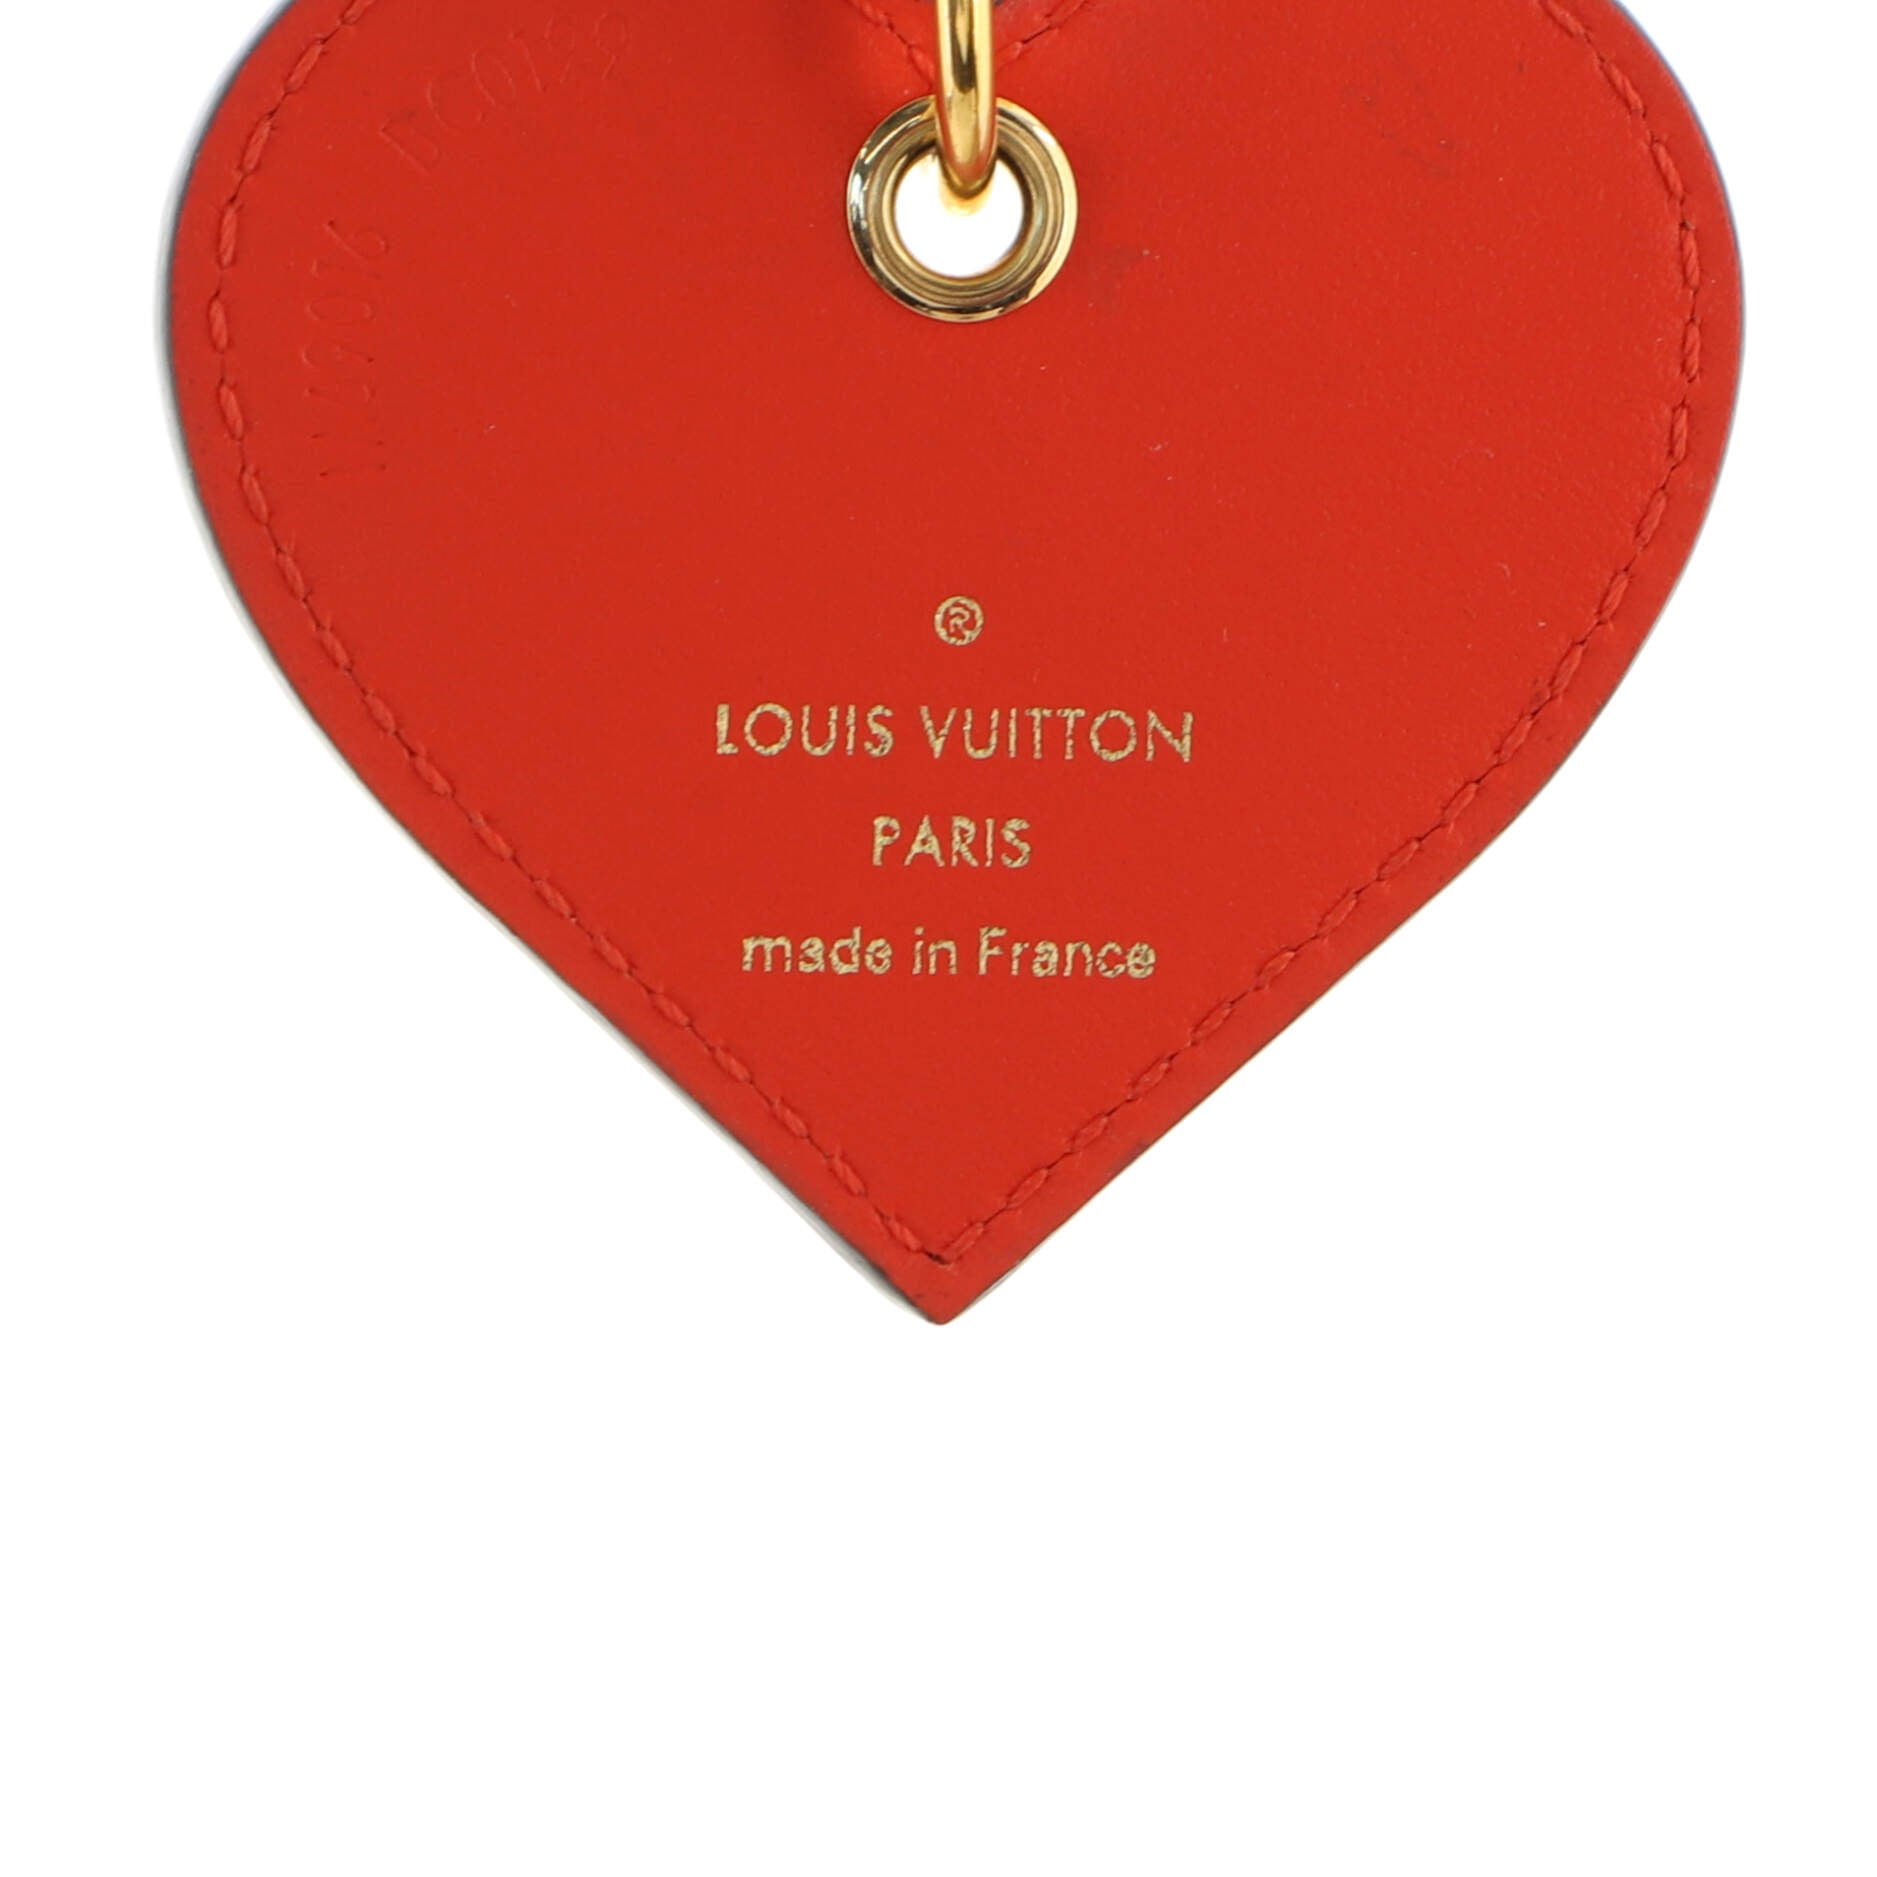 martodesigns - LV Love #1 gold hearts louis vuitton